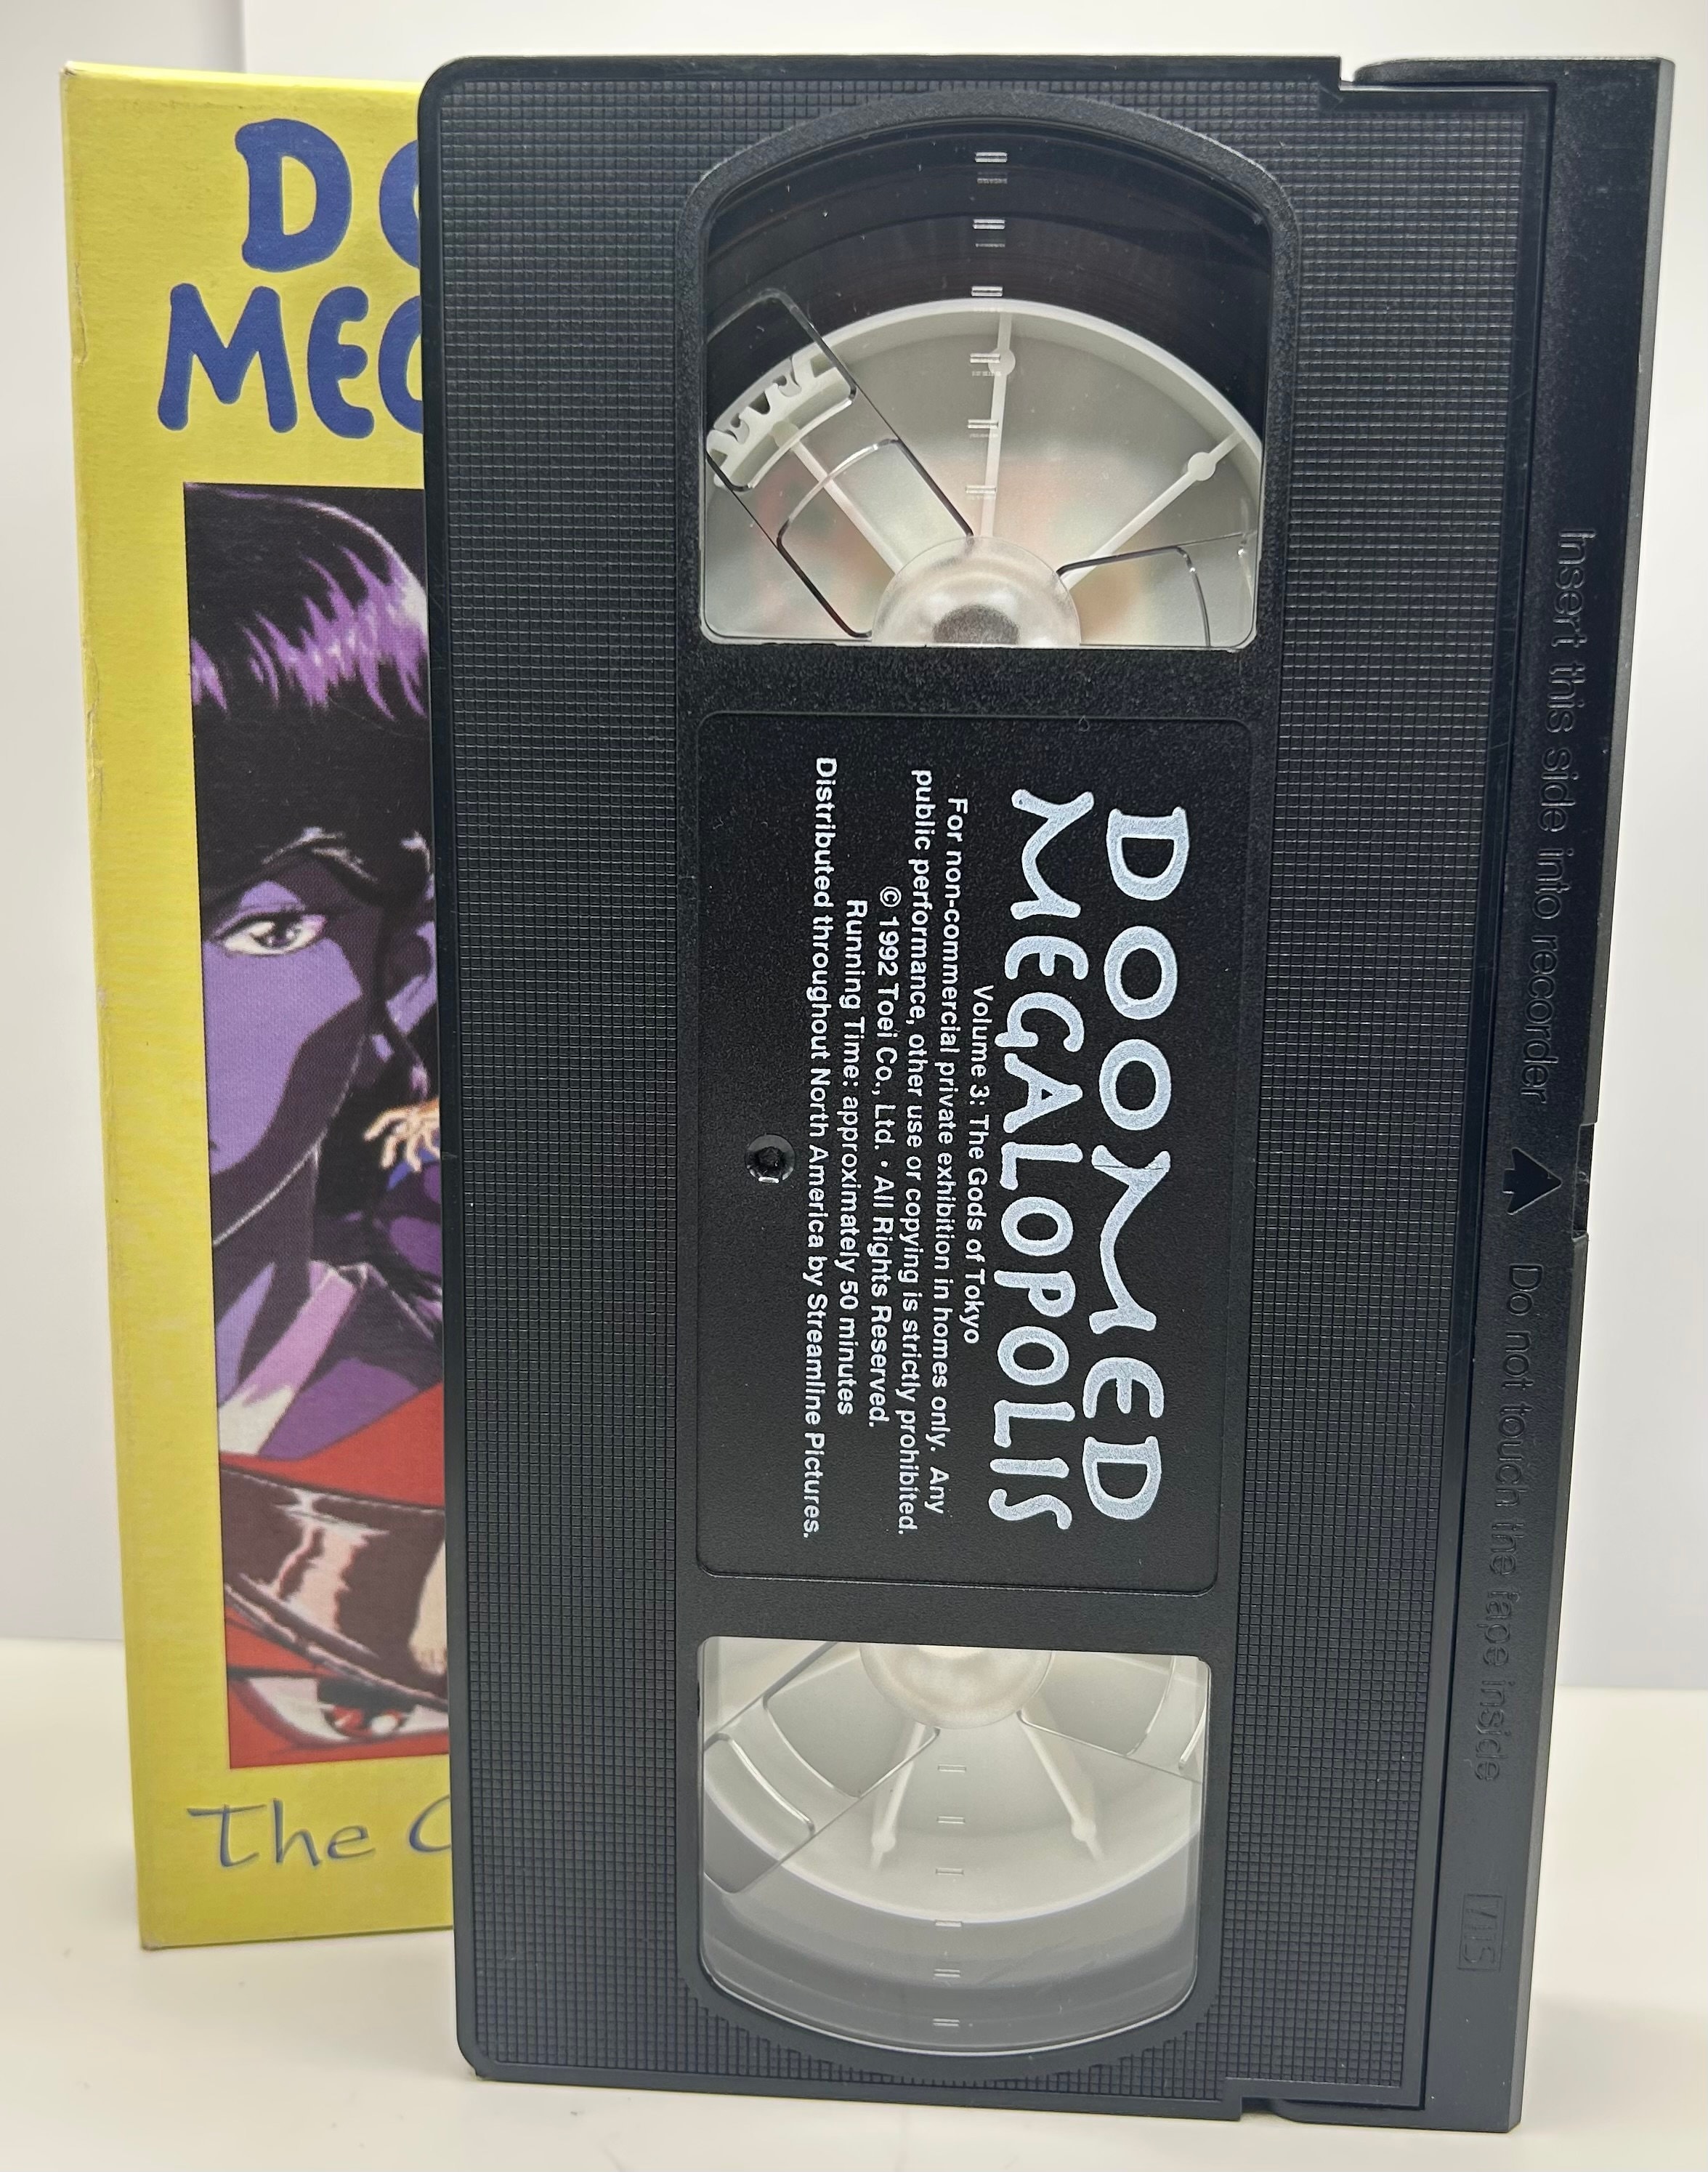 Doomed Megalopolis (DVD, 2002) for sale online